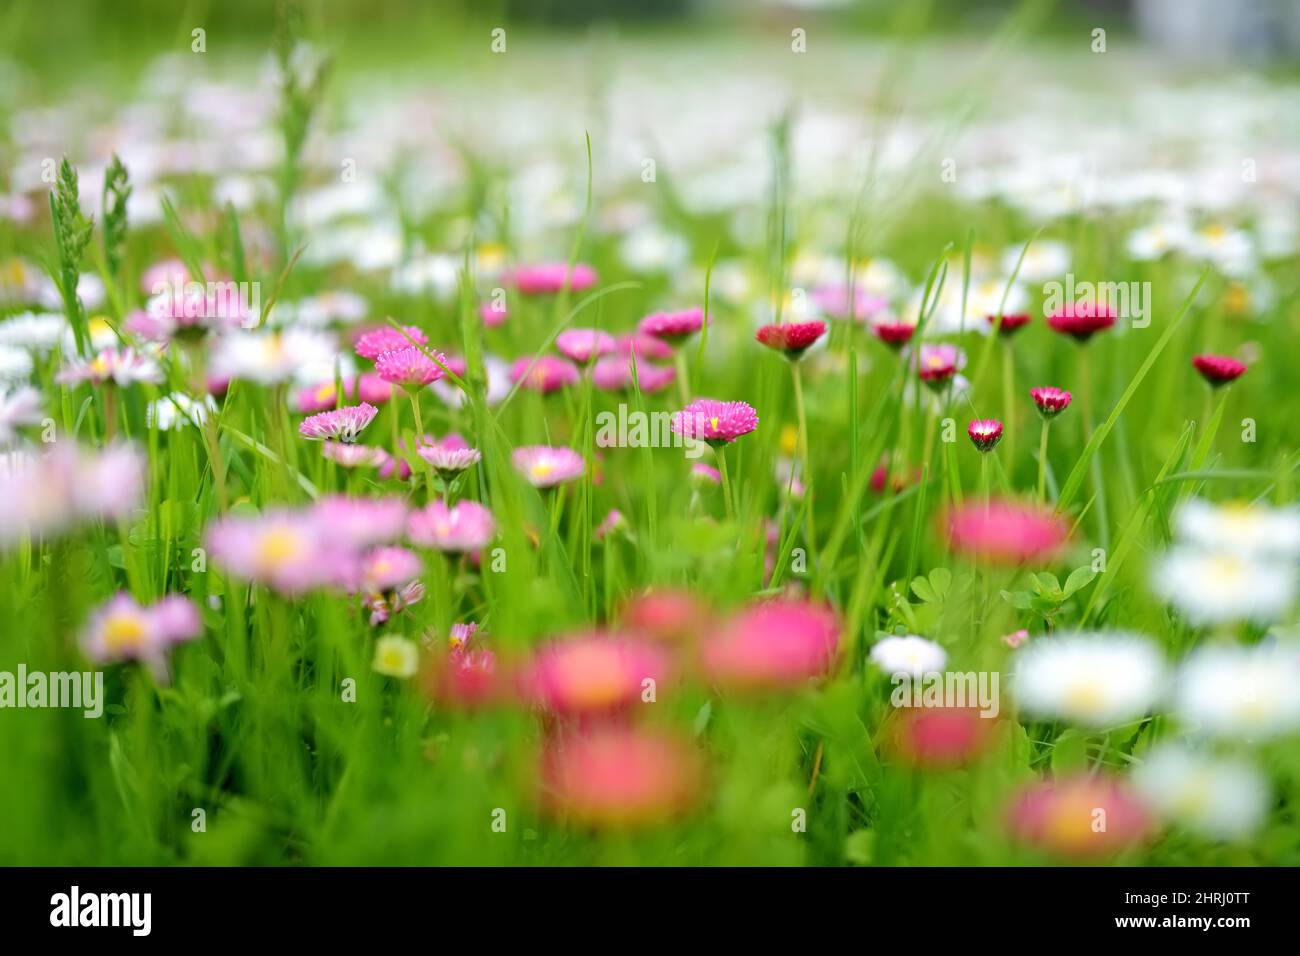 Bel prato in primavera pieno di fioritura bianco e rosa margherite comune su erba verde. Prato con margherite. Bellis perennis. Foto Stock